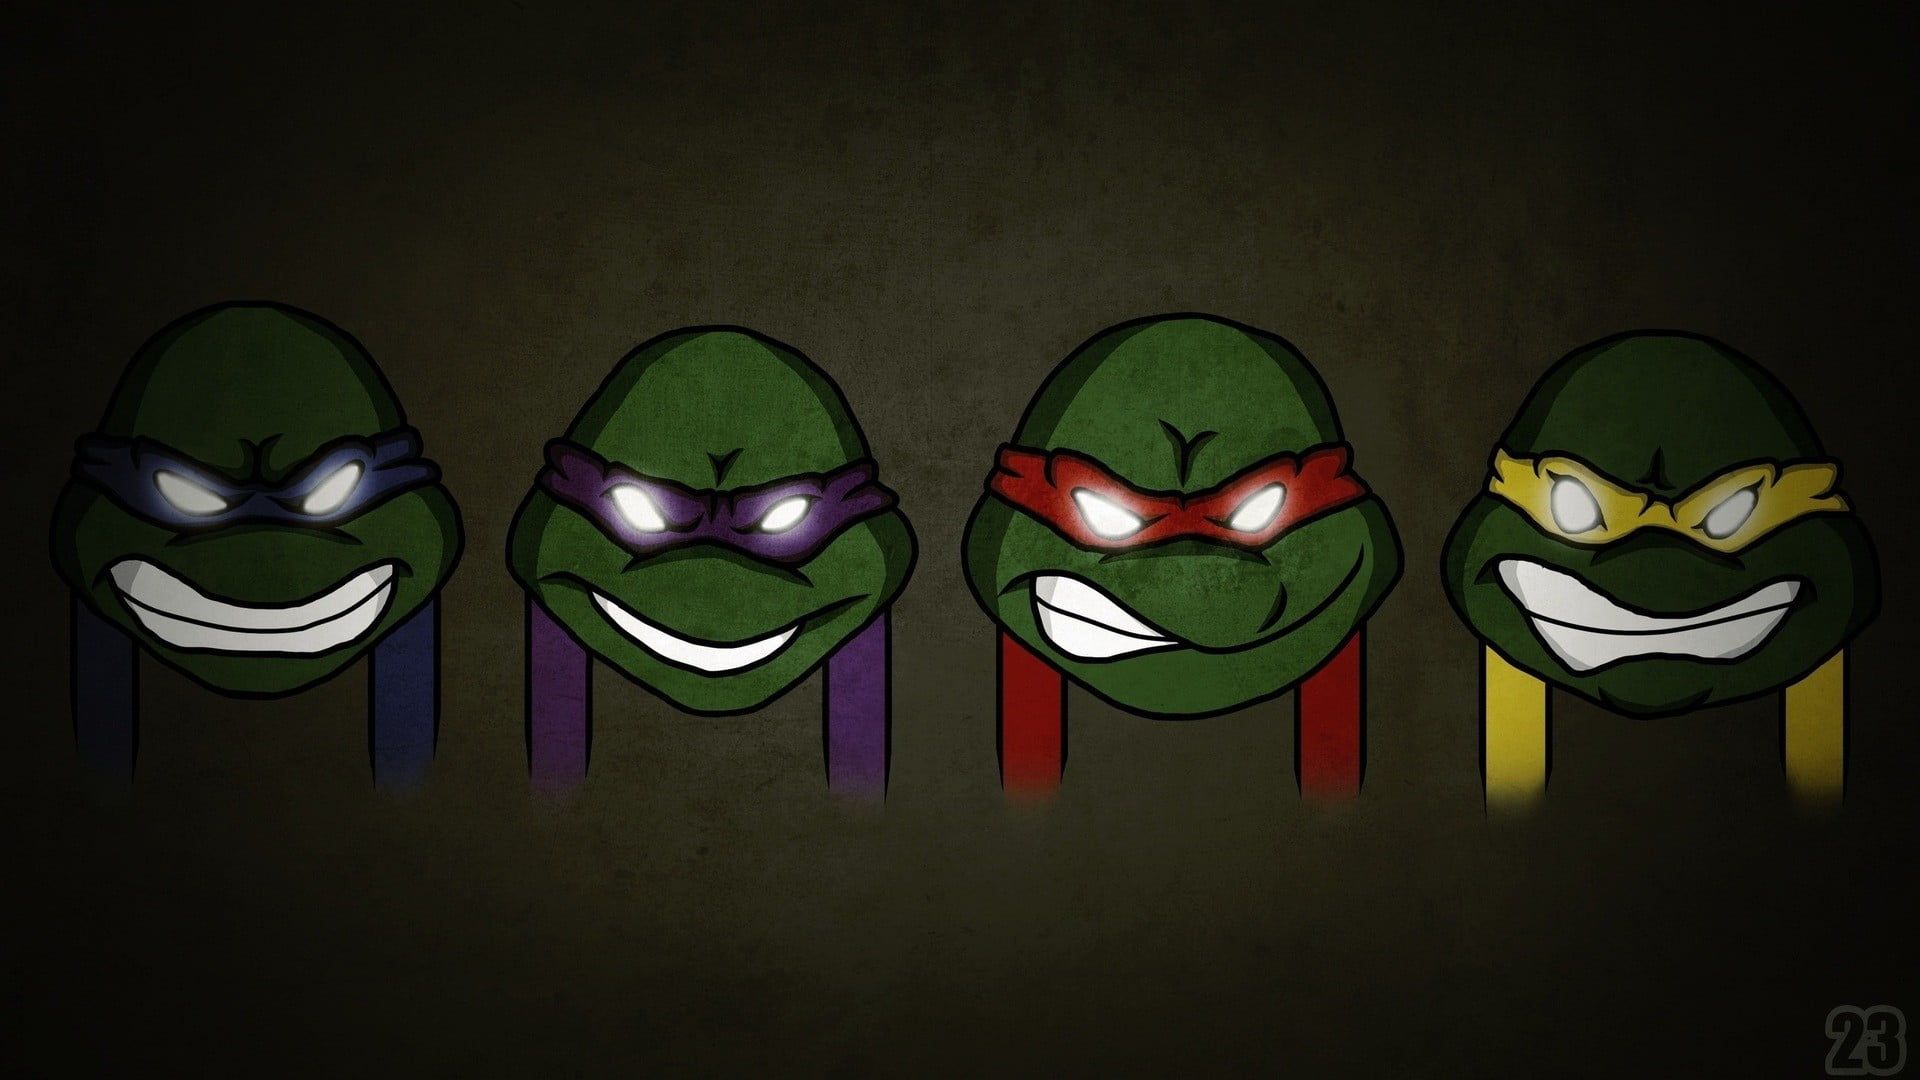 Teenage Mutant Ninja Turtles wallpaper, Teenage Mutant Ninja